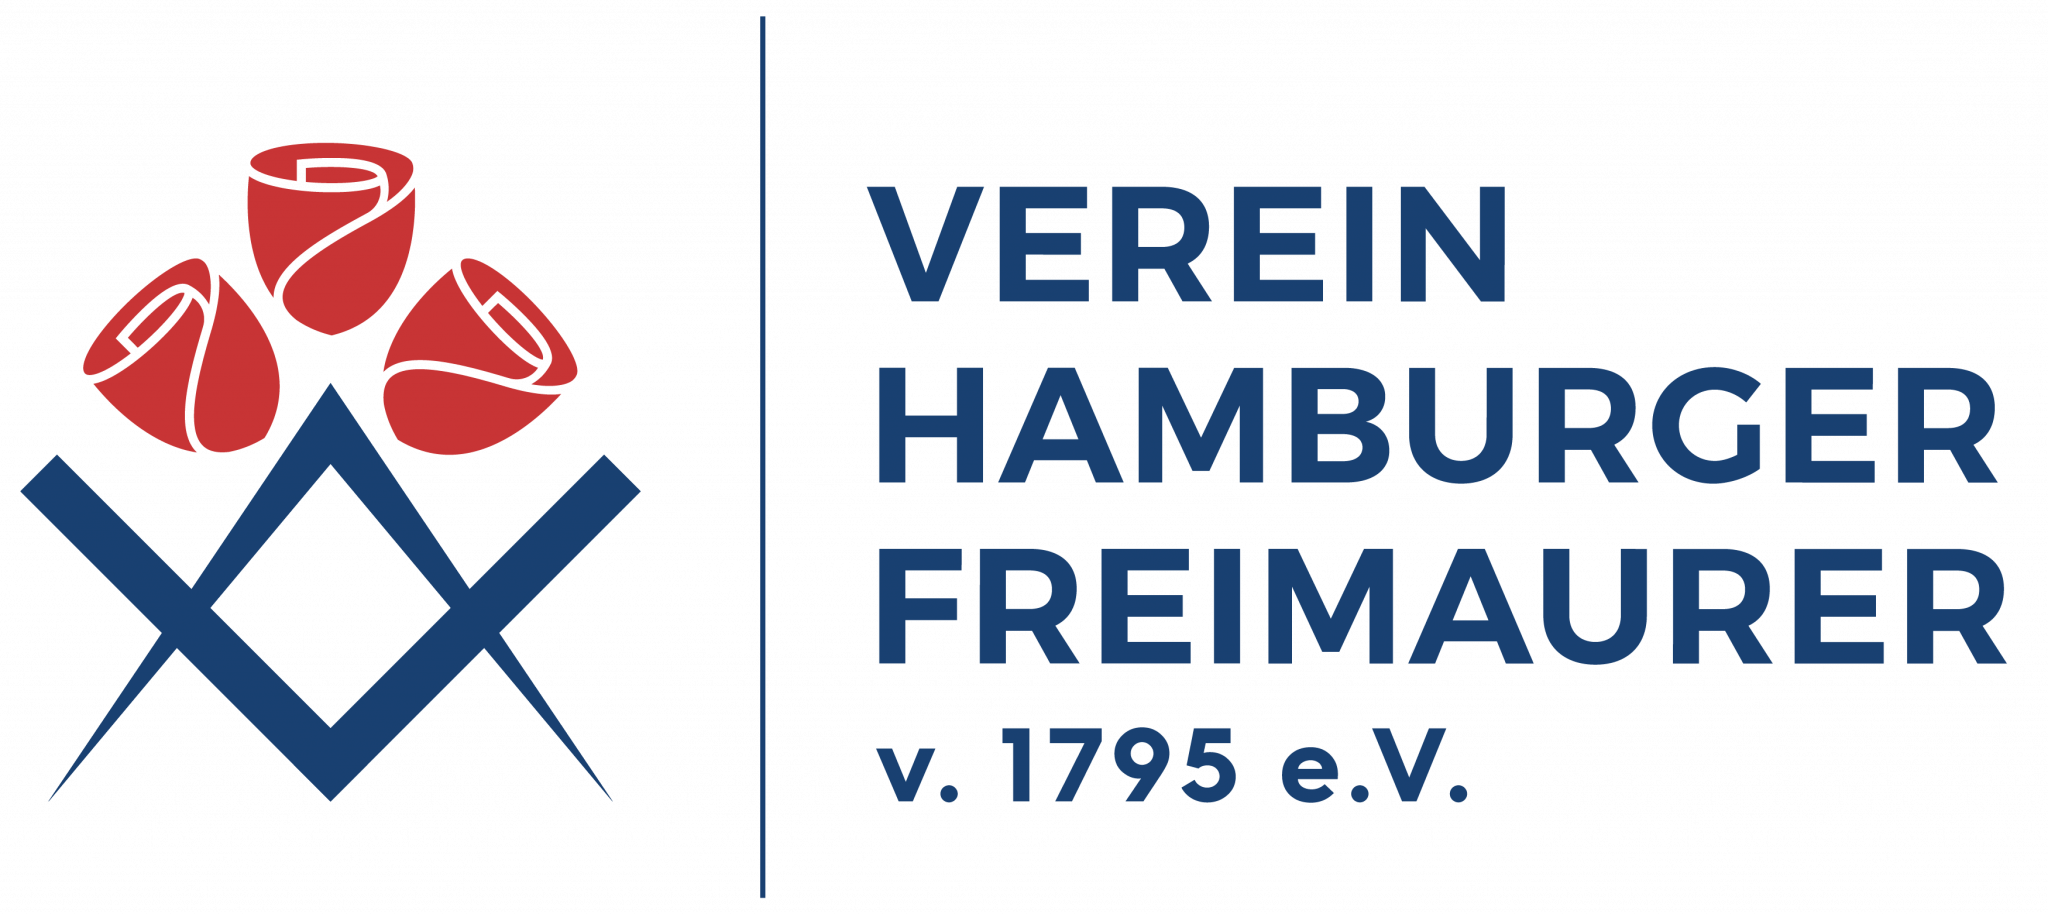 Verein Hamburger Freimaurer von 1795 Hamburg Logo